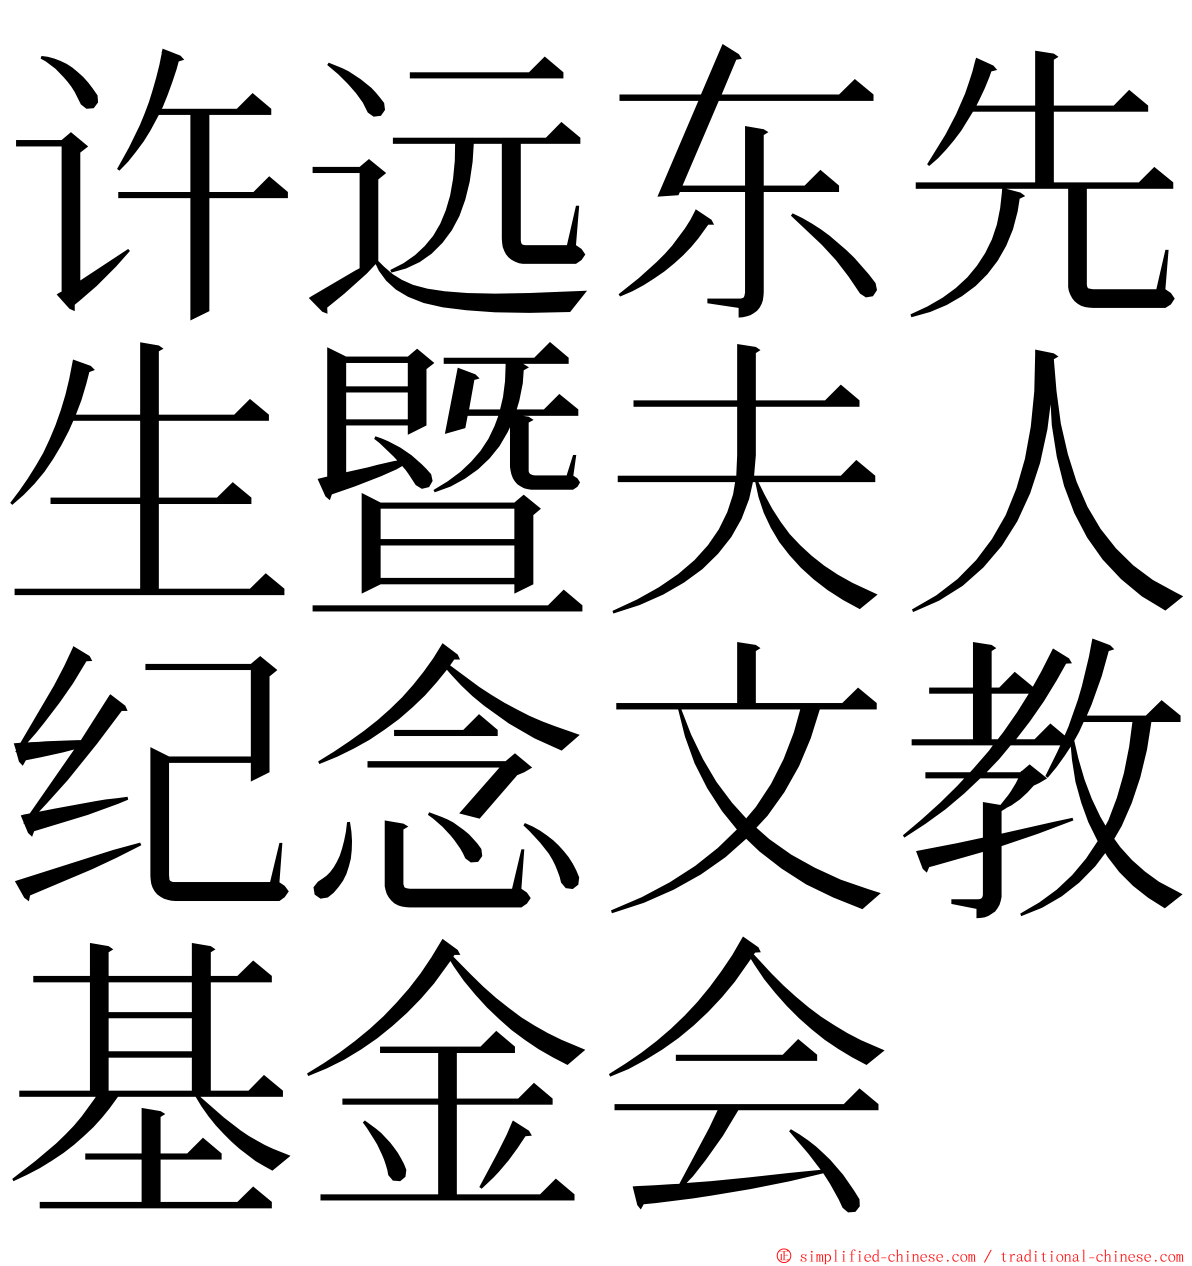 许远东先生暨夫人纪念文教基金会 ming font